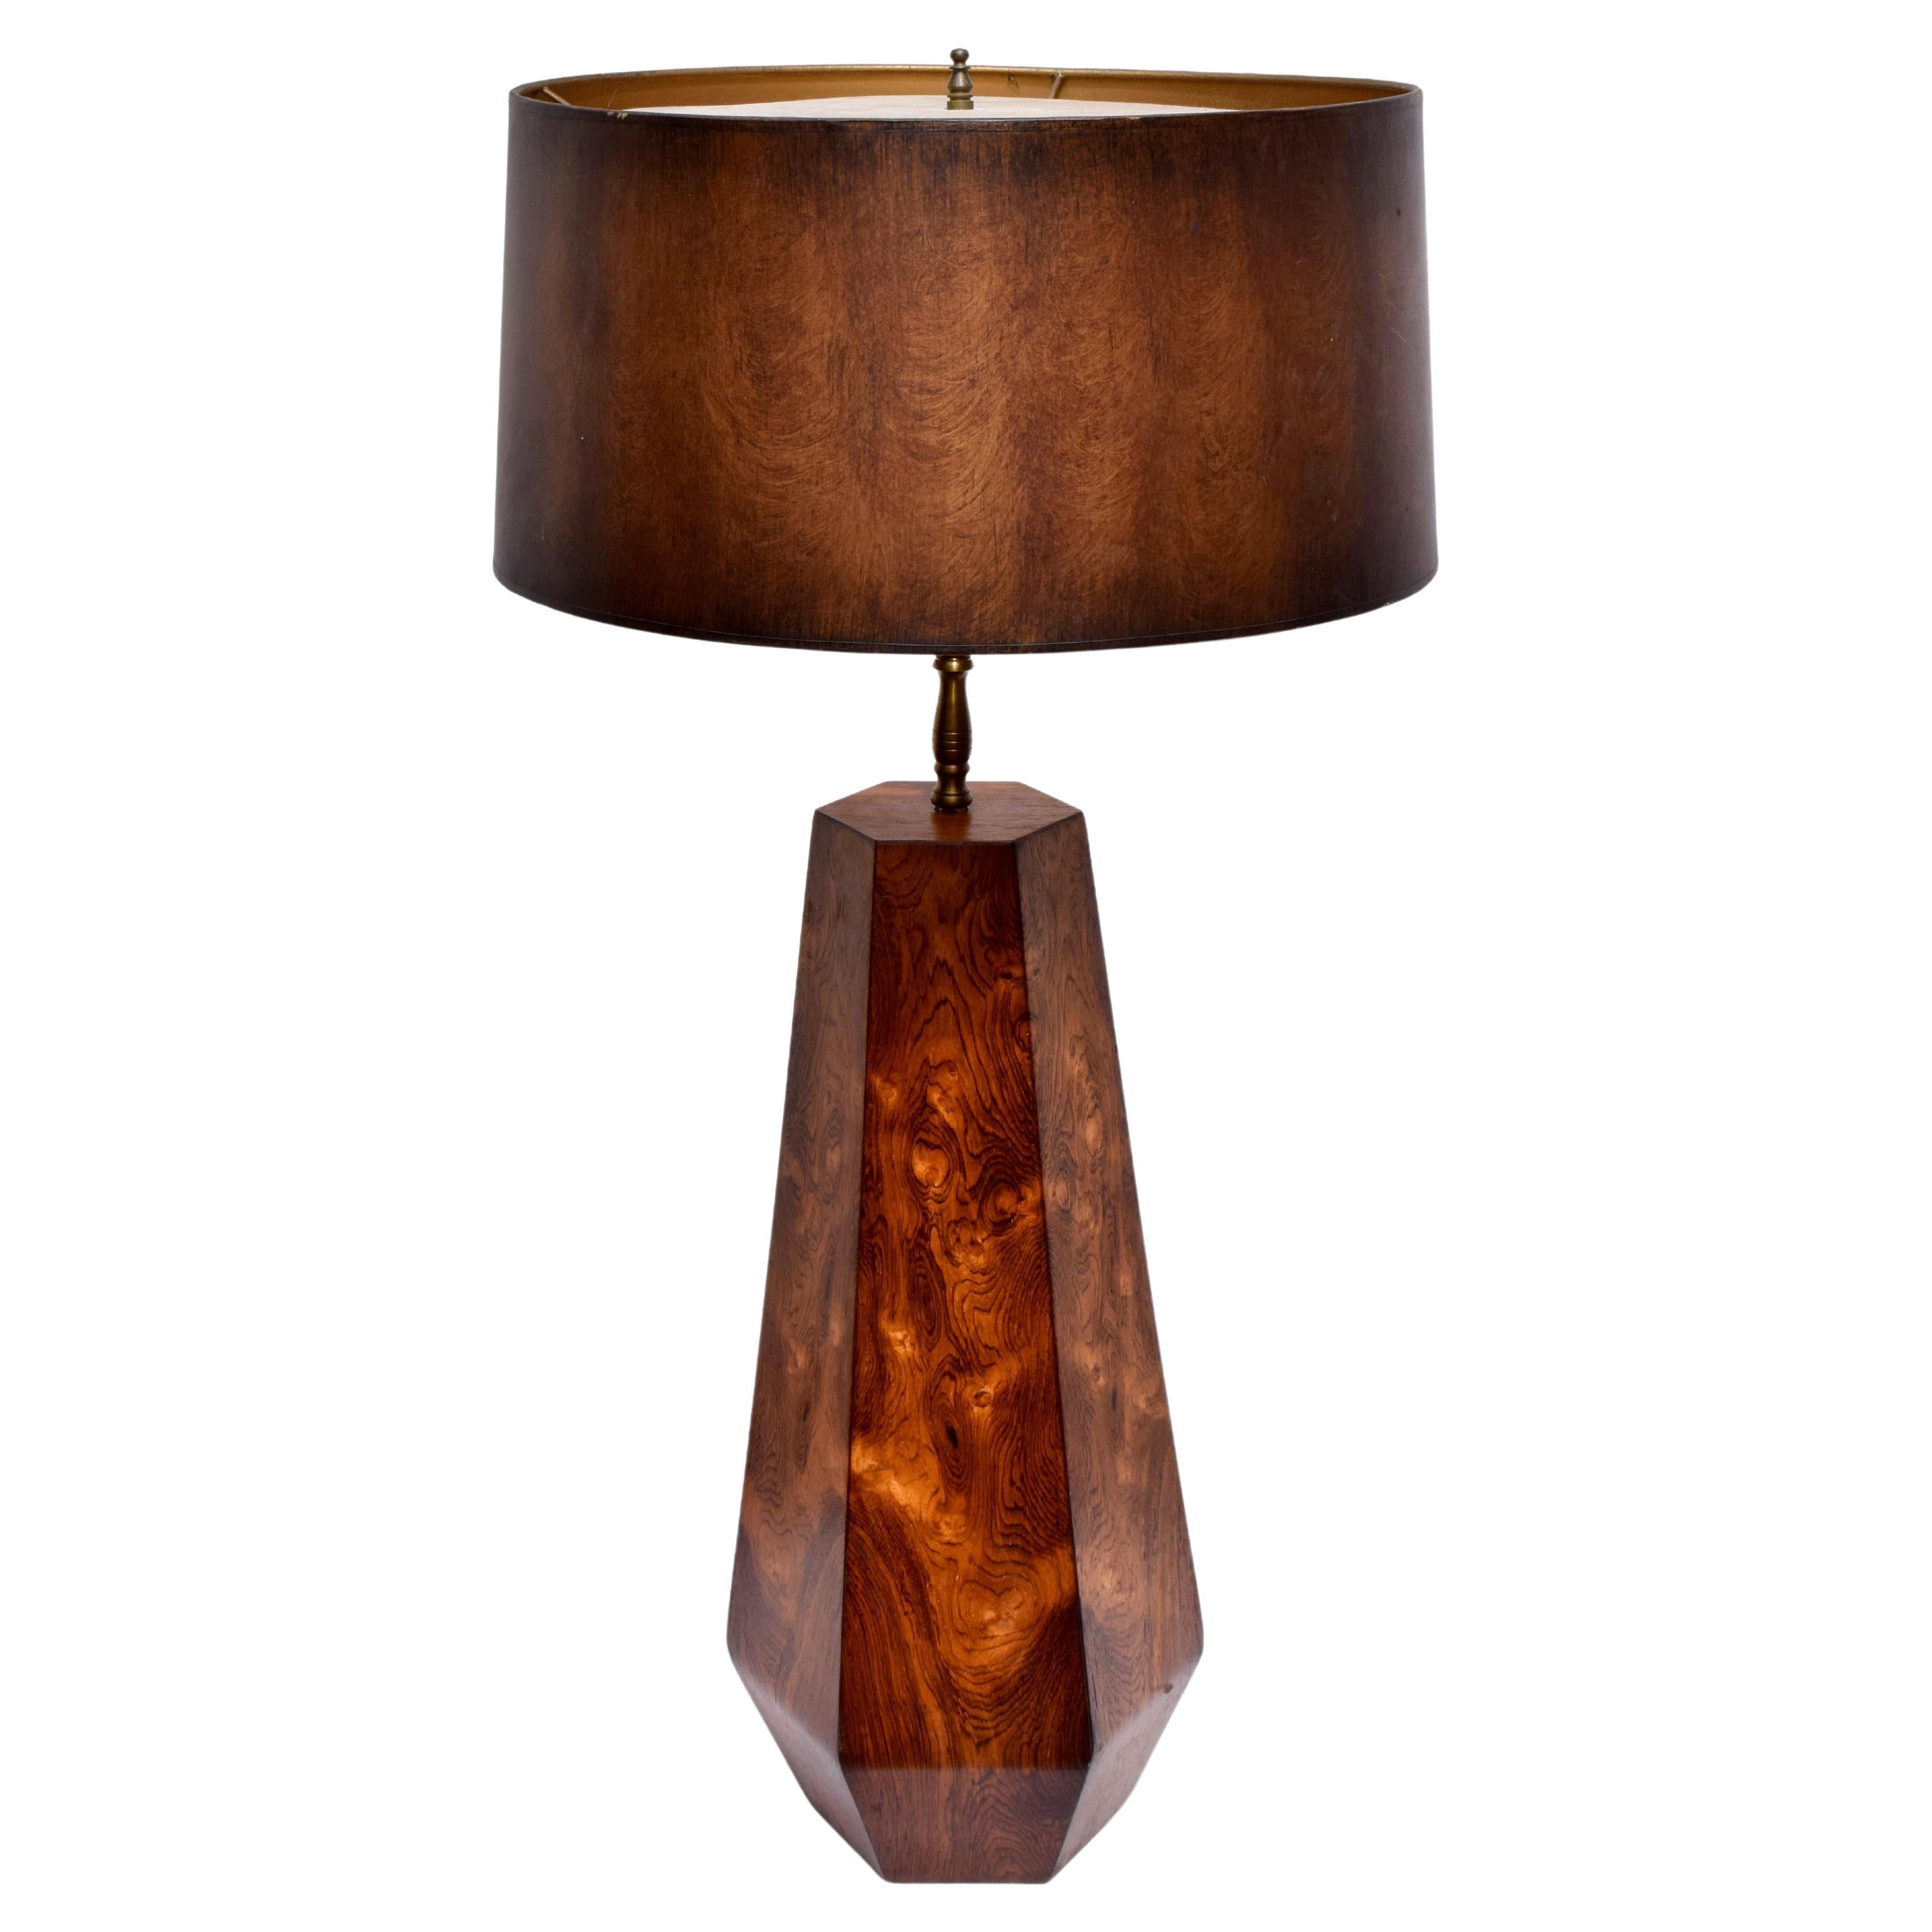 Burlwood Danish Modern Table Lamp